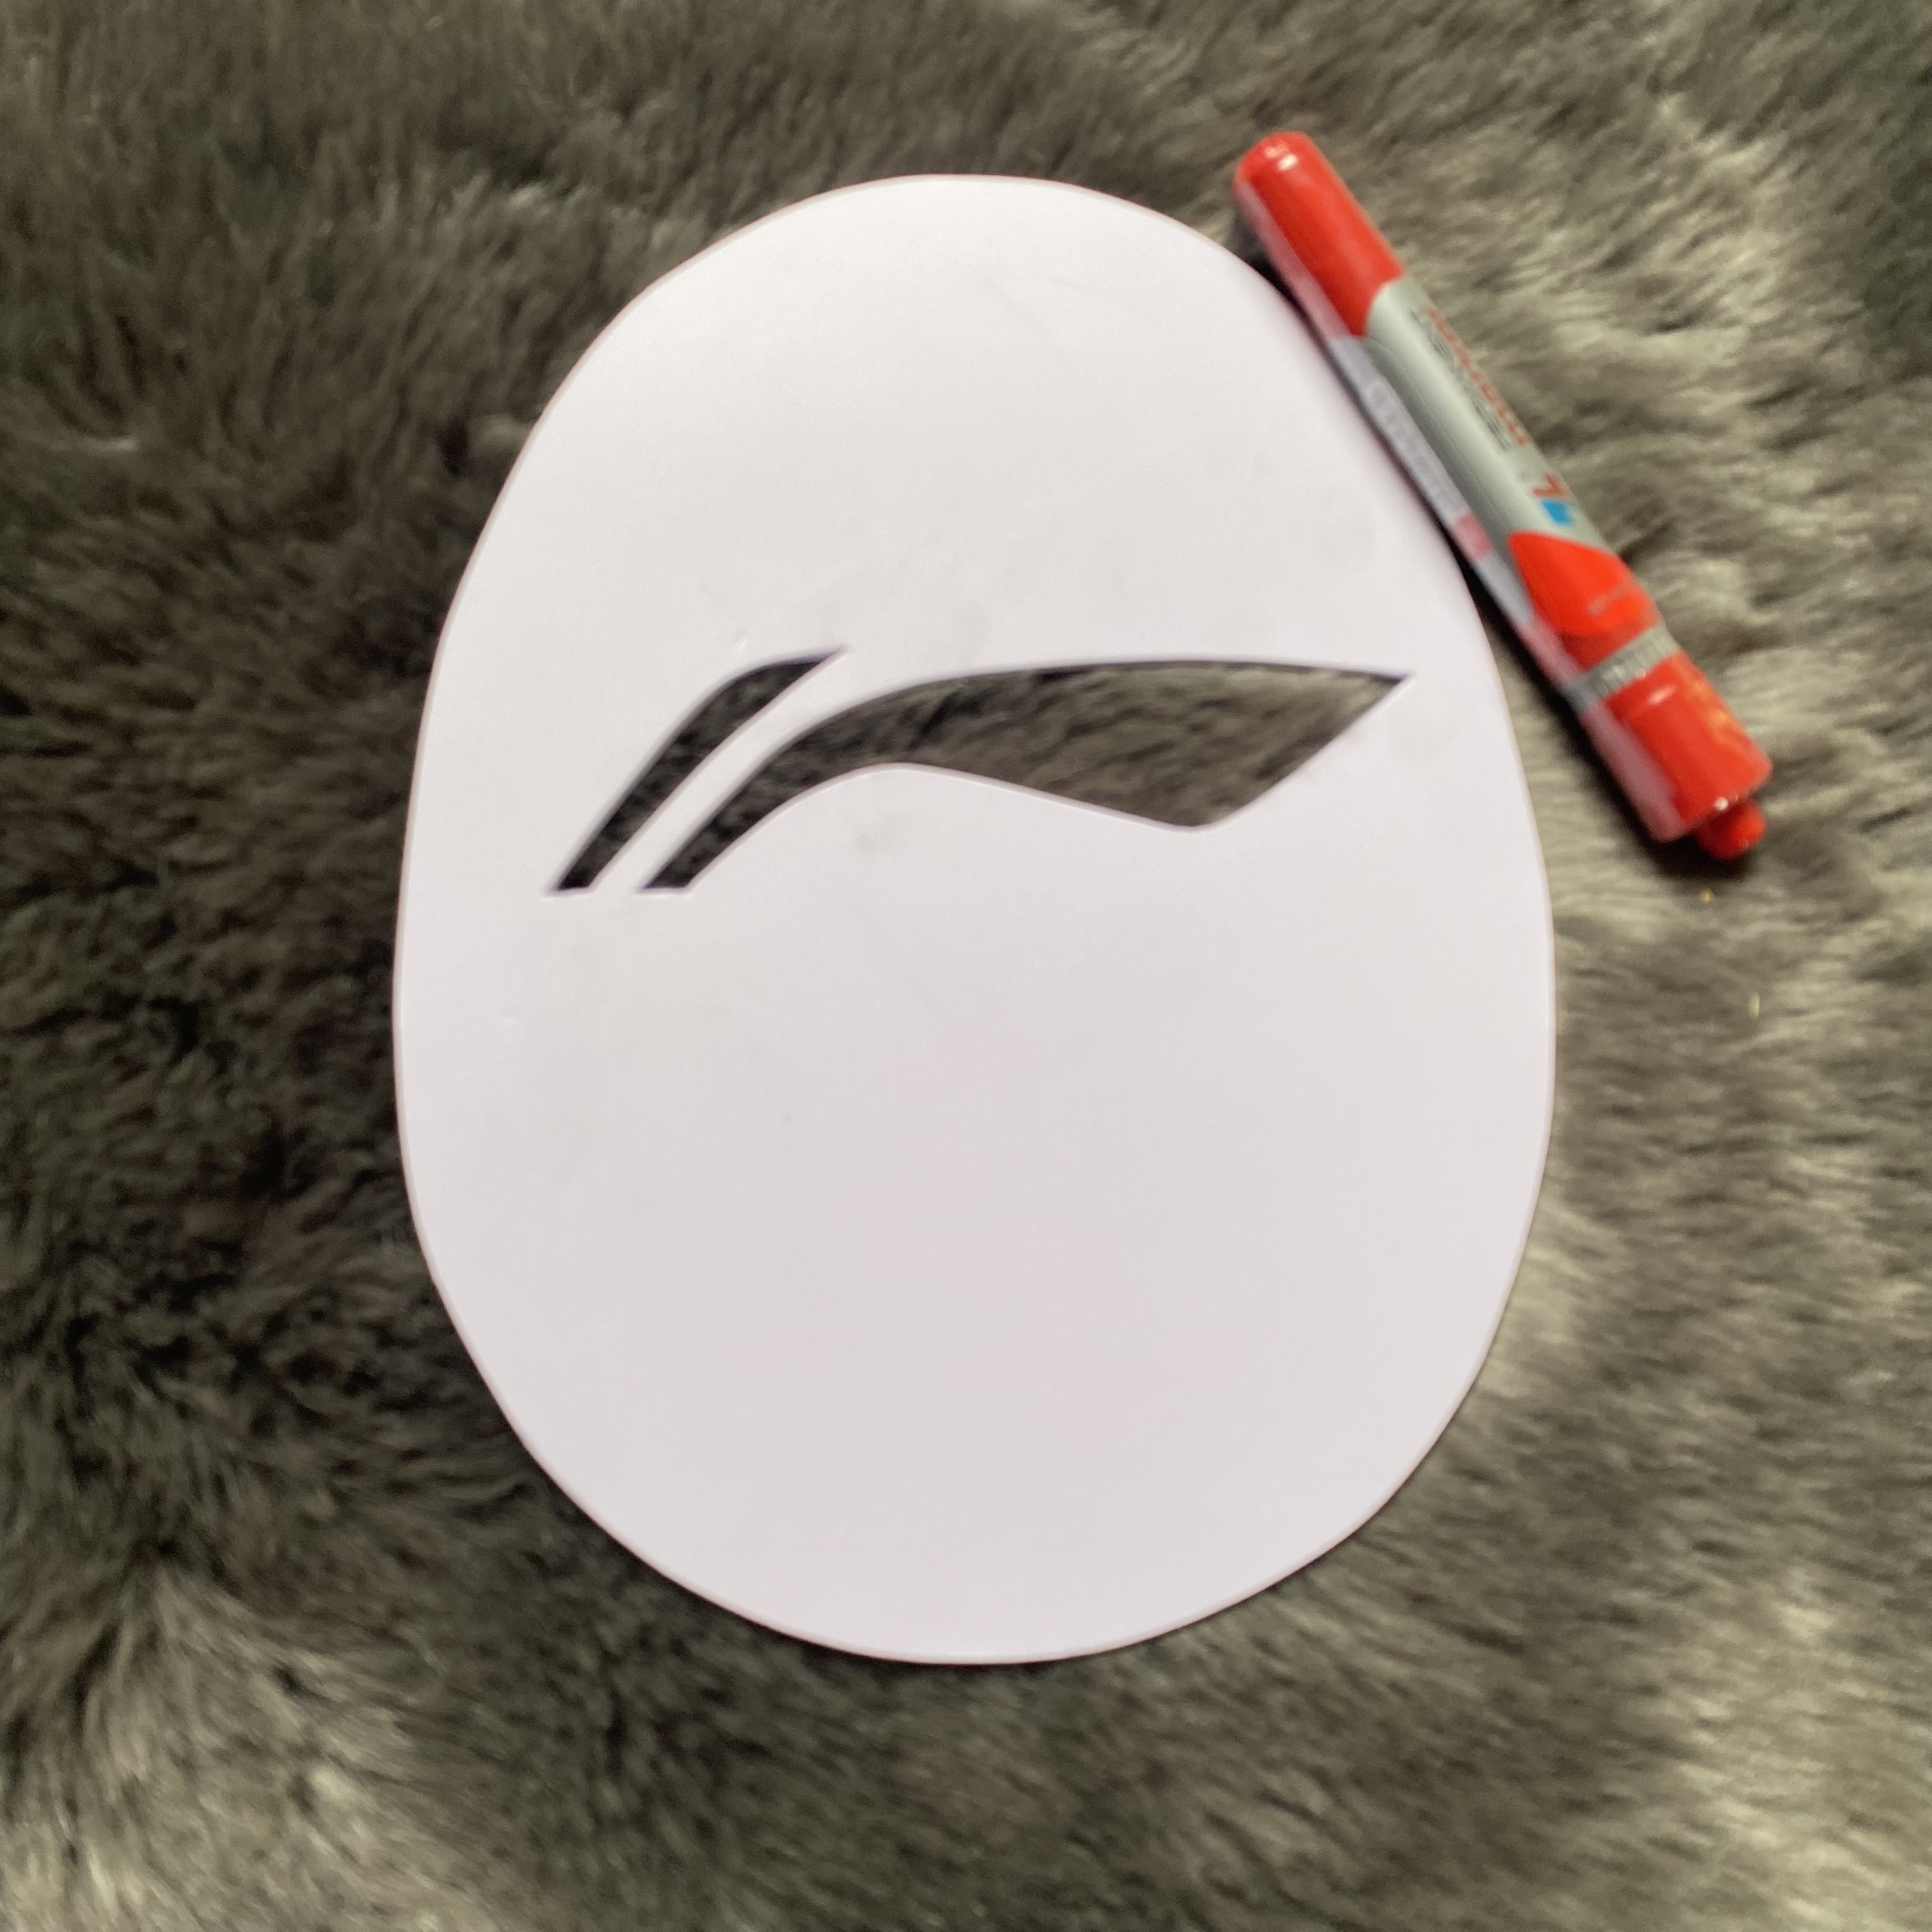 Khung logo vợt cầu lông yonex lining lindan chất liệu fomex màu trắng sơn lưới vợt cầu lông